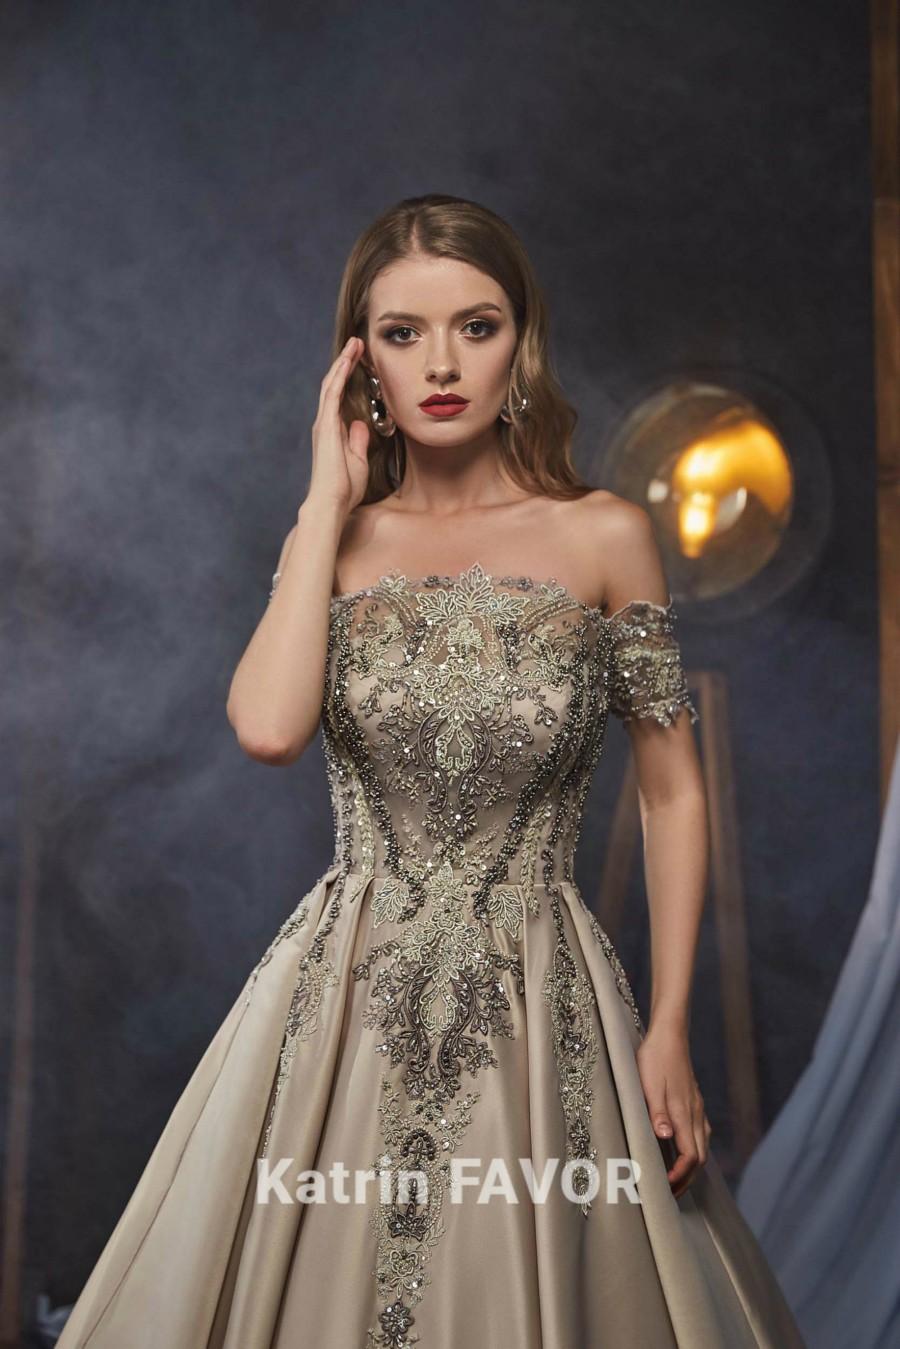 Wedding - Evening Gown Prom Dress Long Off Shoulder Dress Lace Dress Beaded Dress Ball Gown Alternative Wedding Dress Corset Dress Plus Size Maxi 2020